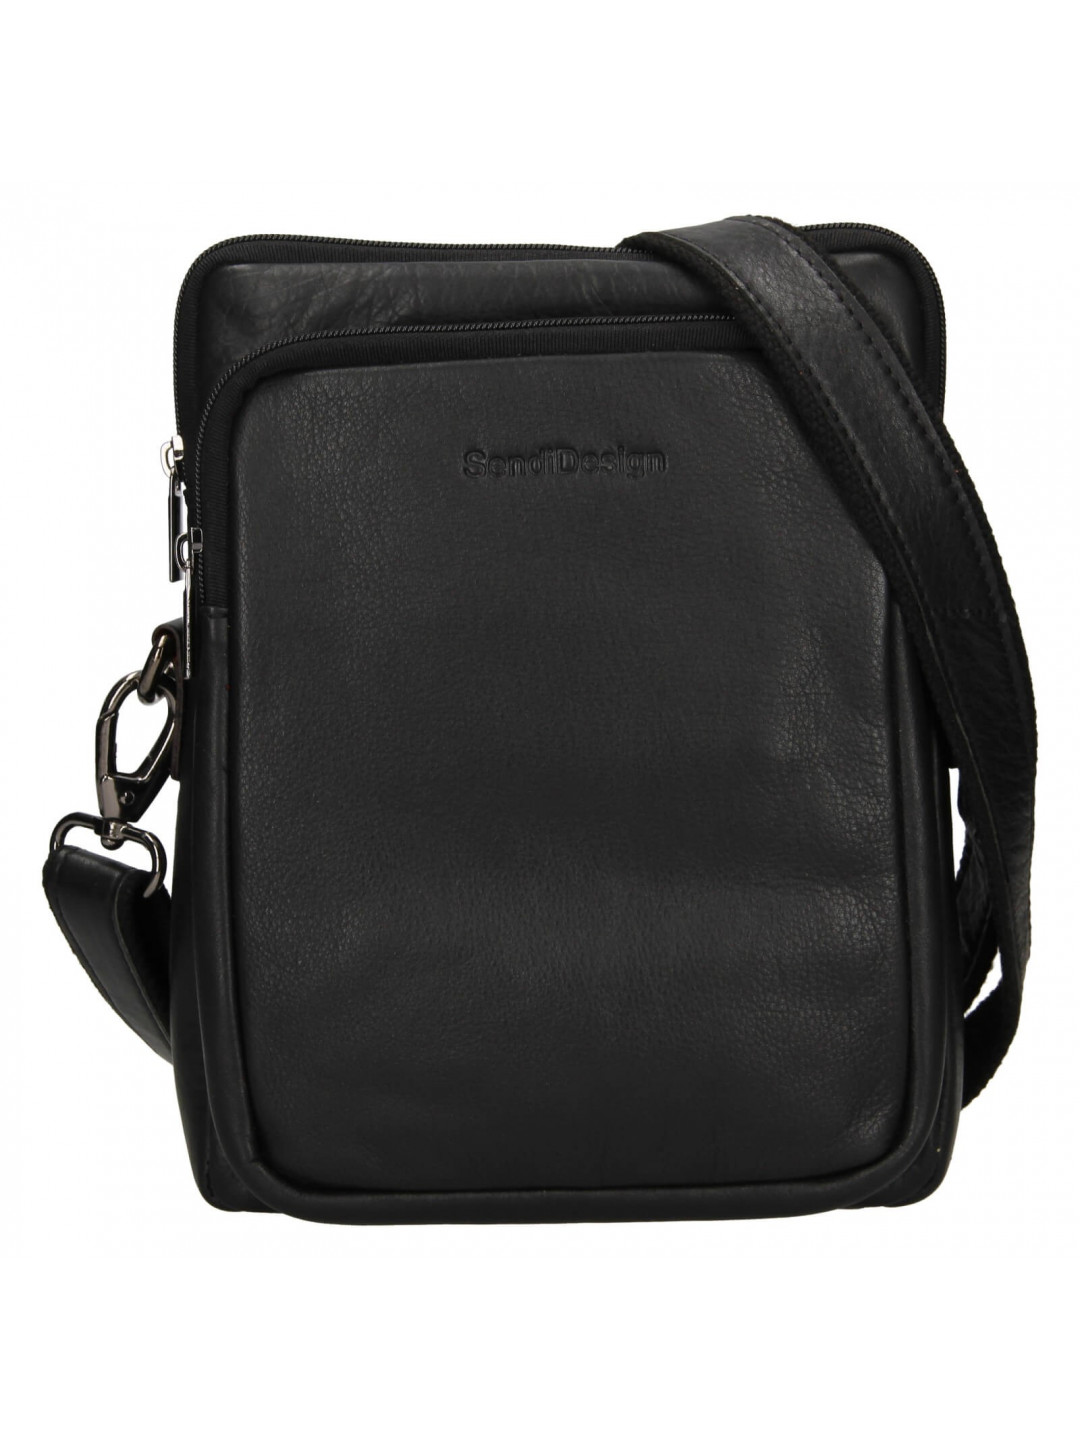 Panská kožená taška přes rameno SendiDesign Bente – černá